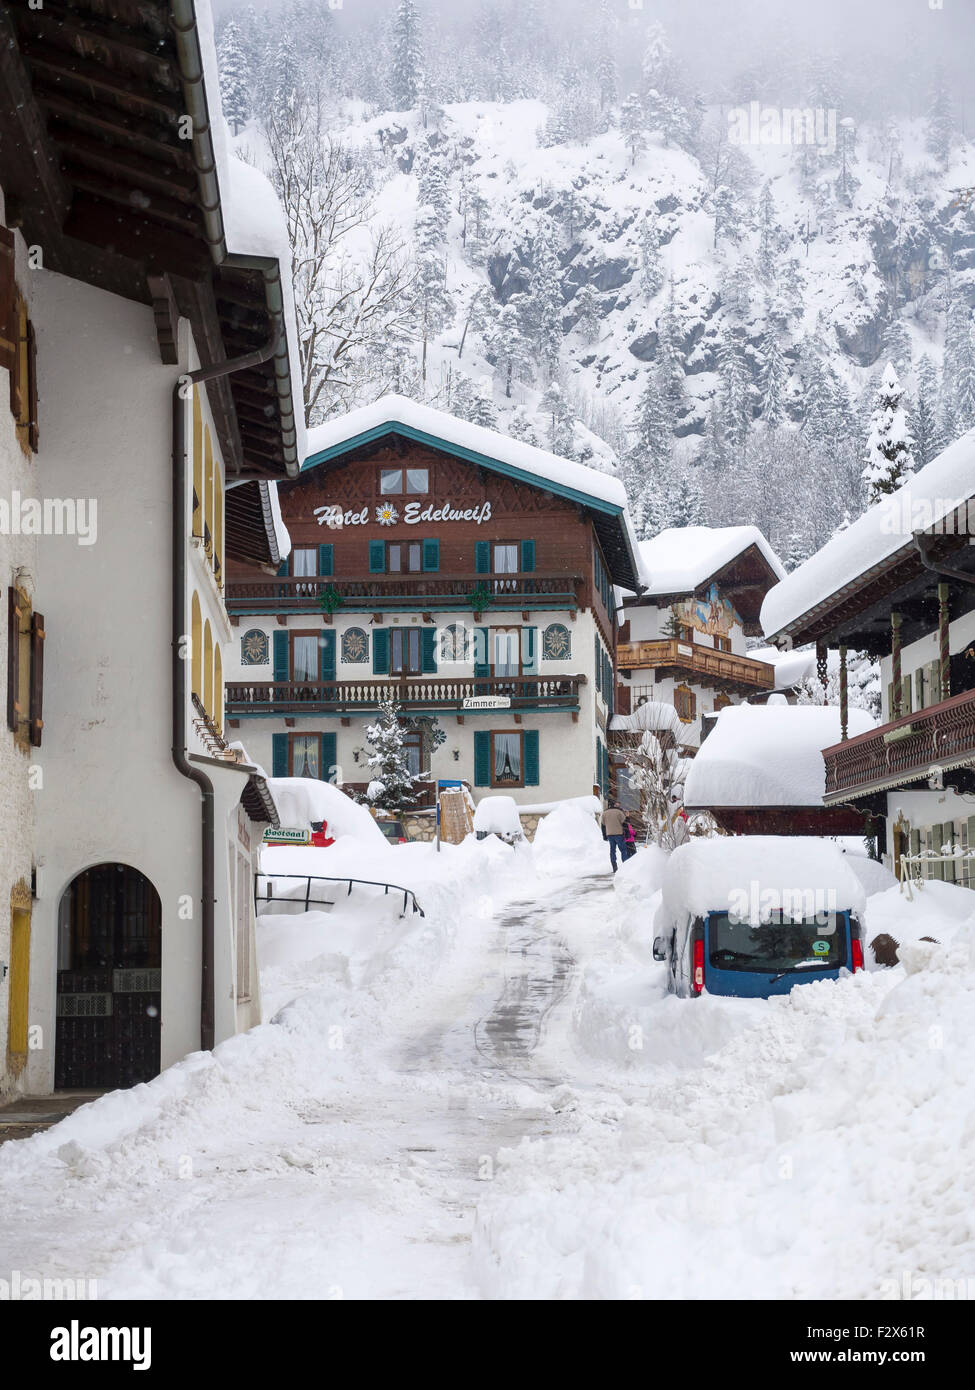 Germany, Bavaria, Chiemgau, snowy Reit im Winkl Stock Photo - Alamy